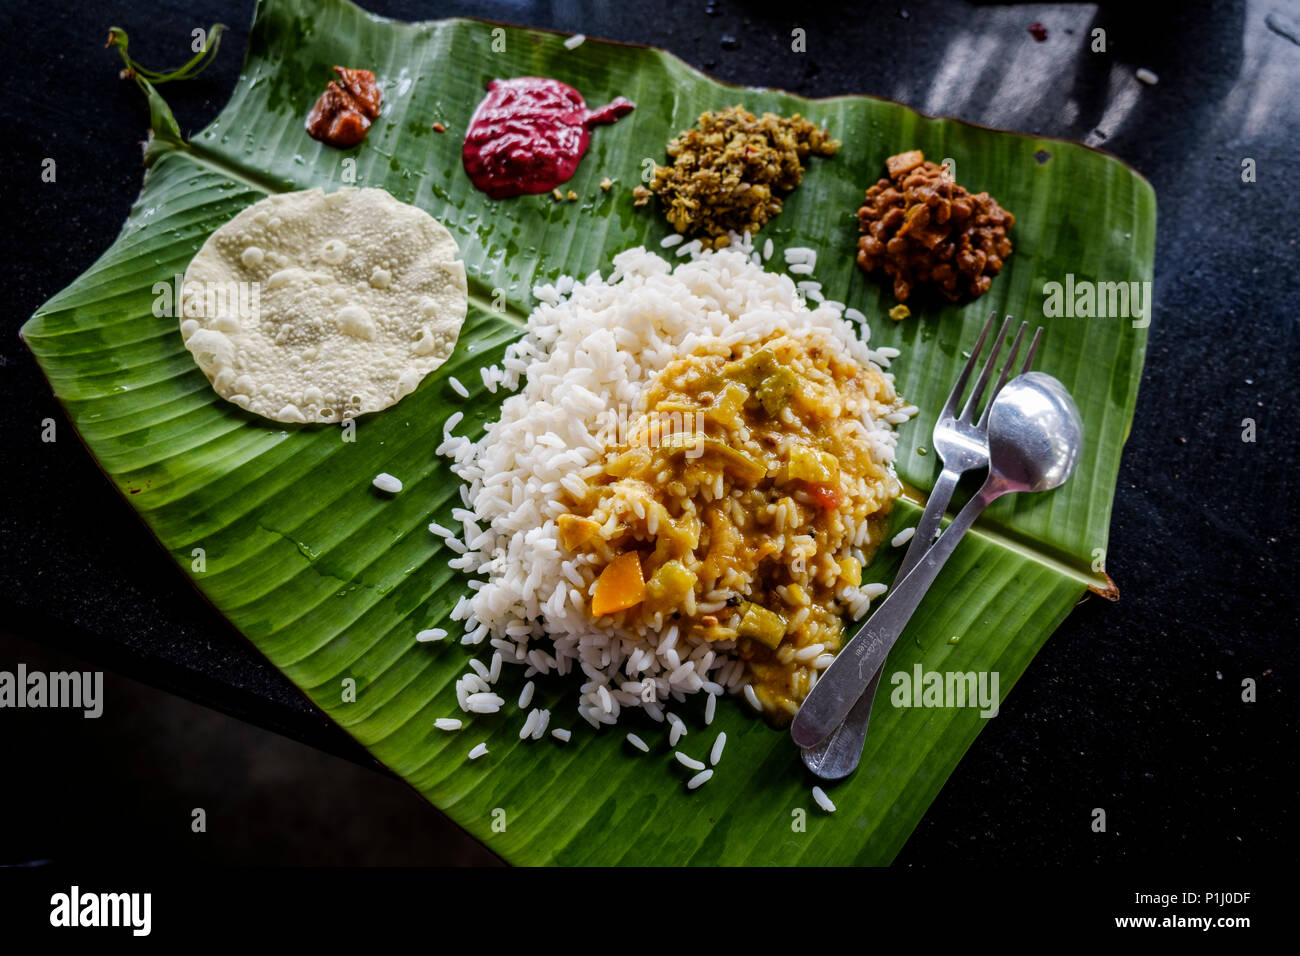 Sadya Kerala, la version du "thali", un repas typique du sud de l'Inde de riz, sambar (ragoût de lentilles), chutneys et pickles servi sur une feuille de bananier. Banque D'Images